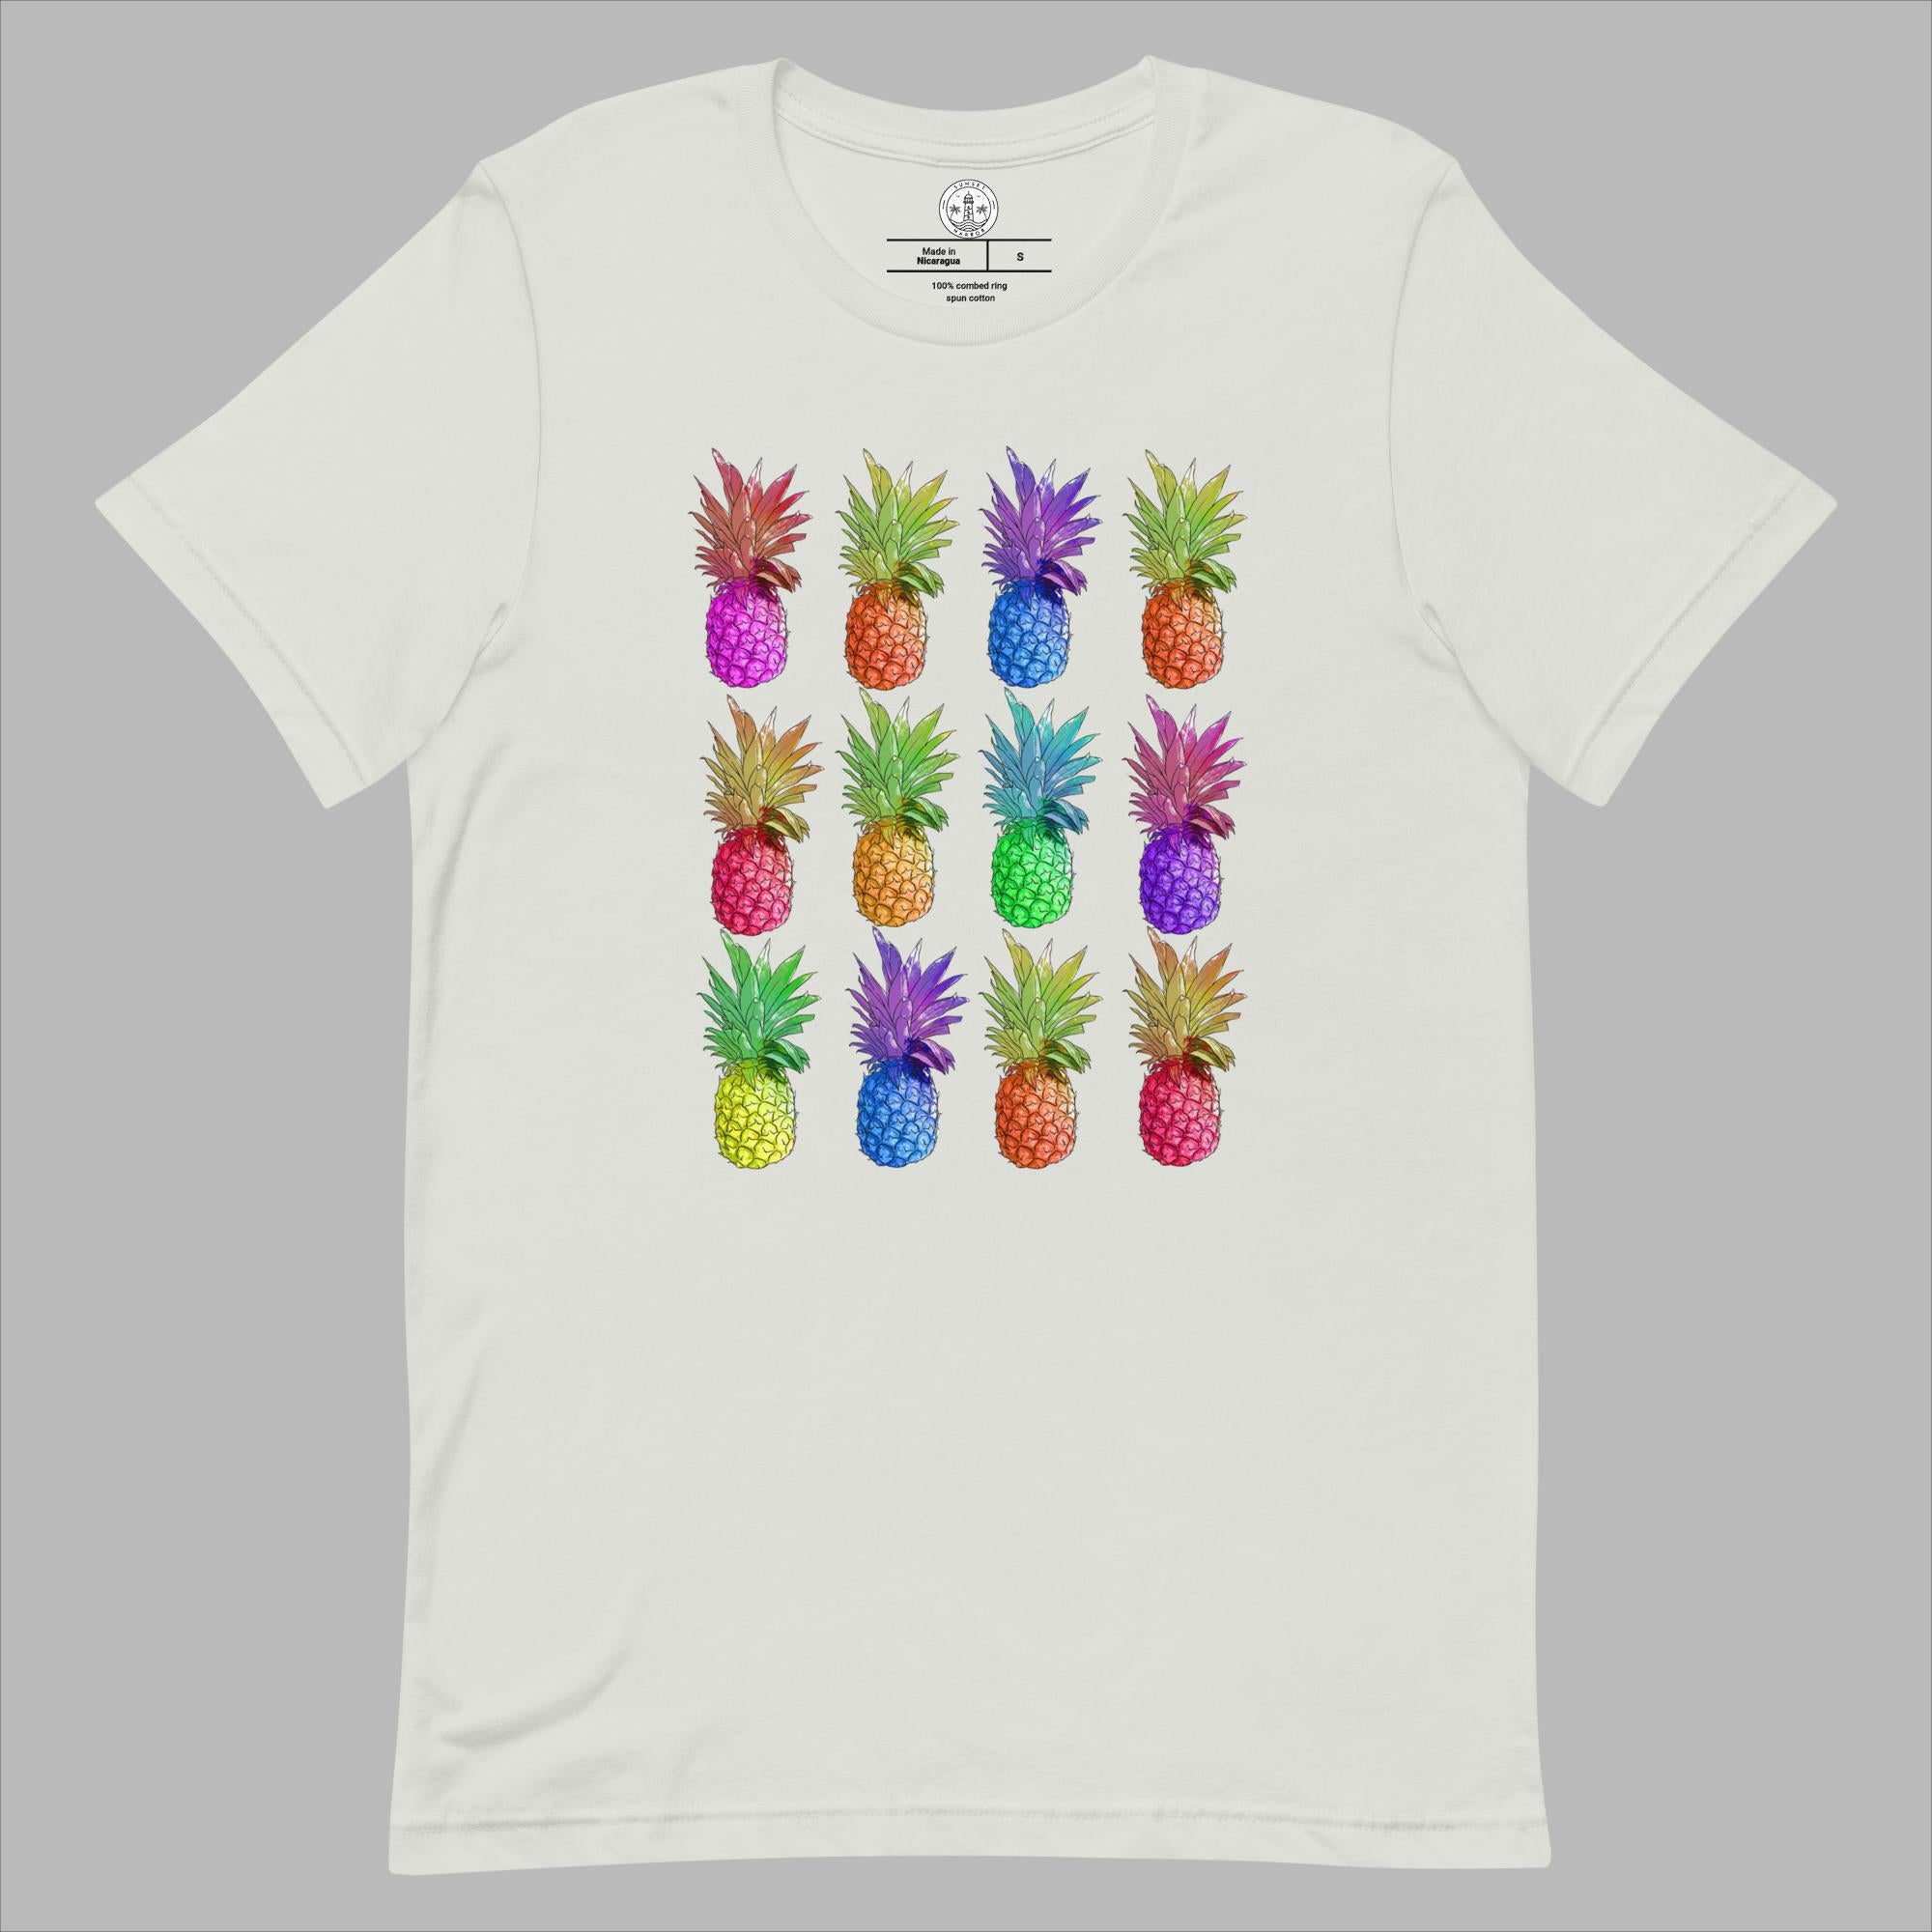 Camiseta unisex - Piñas